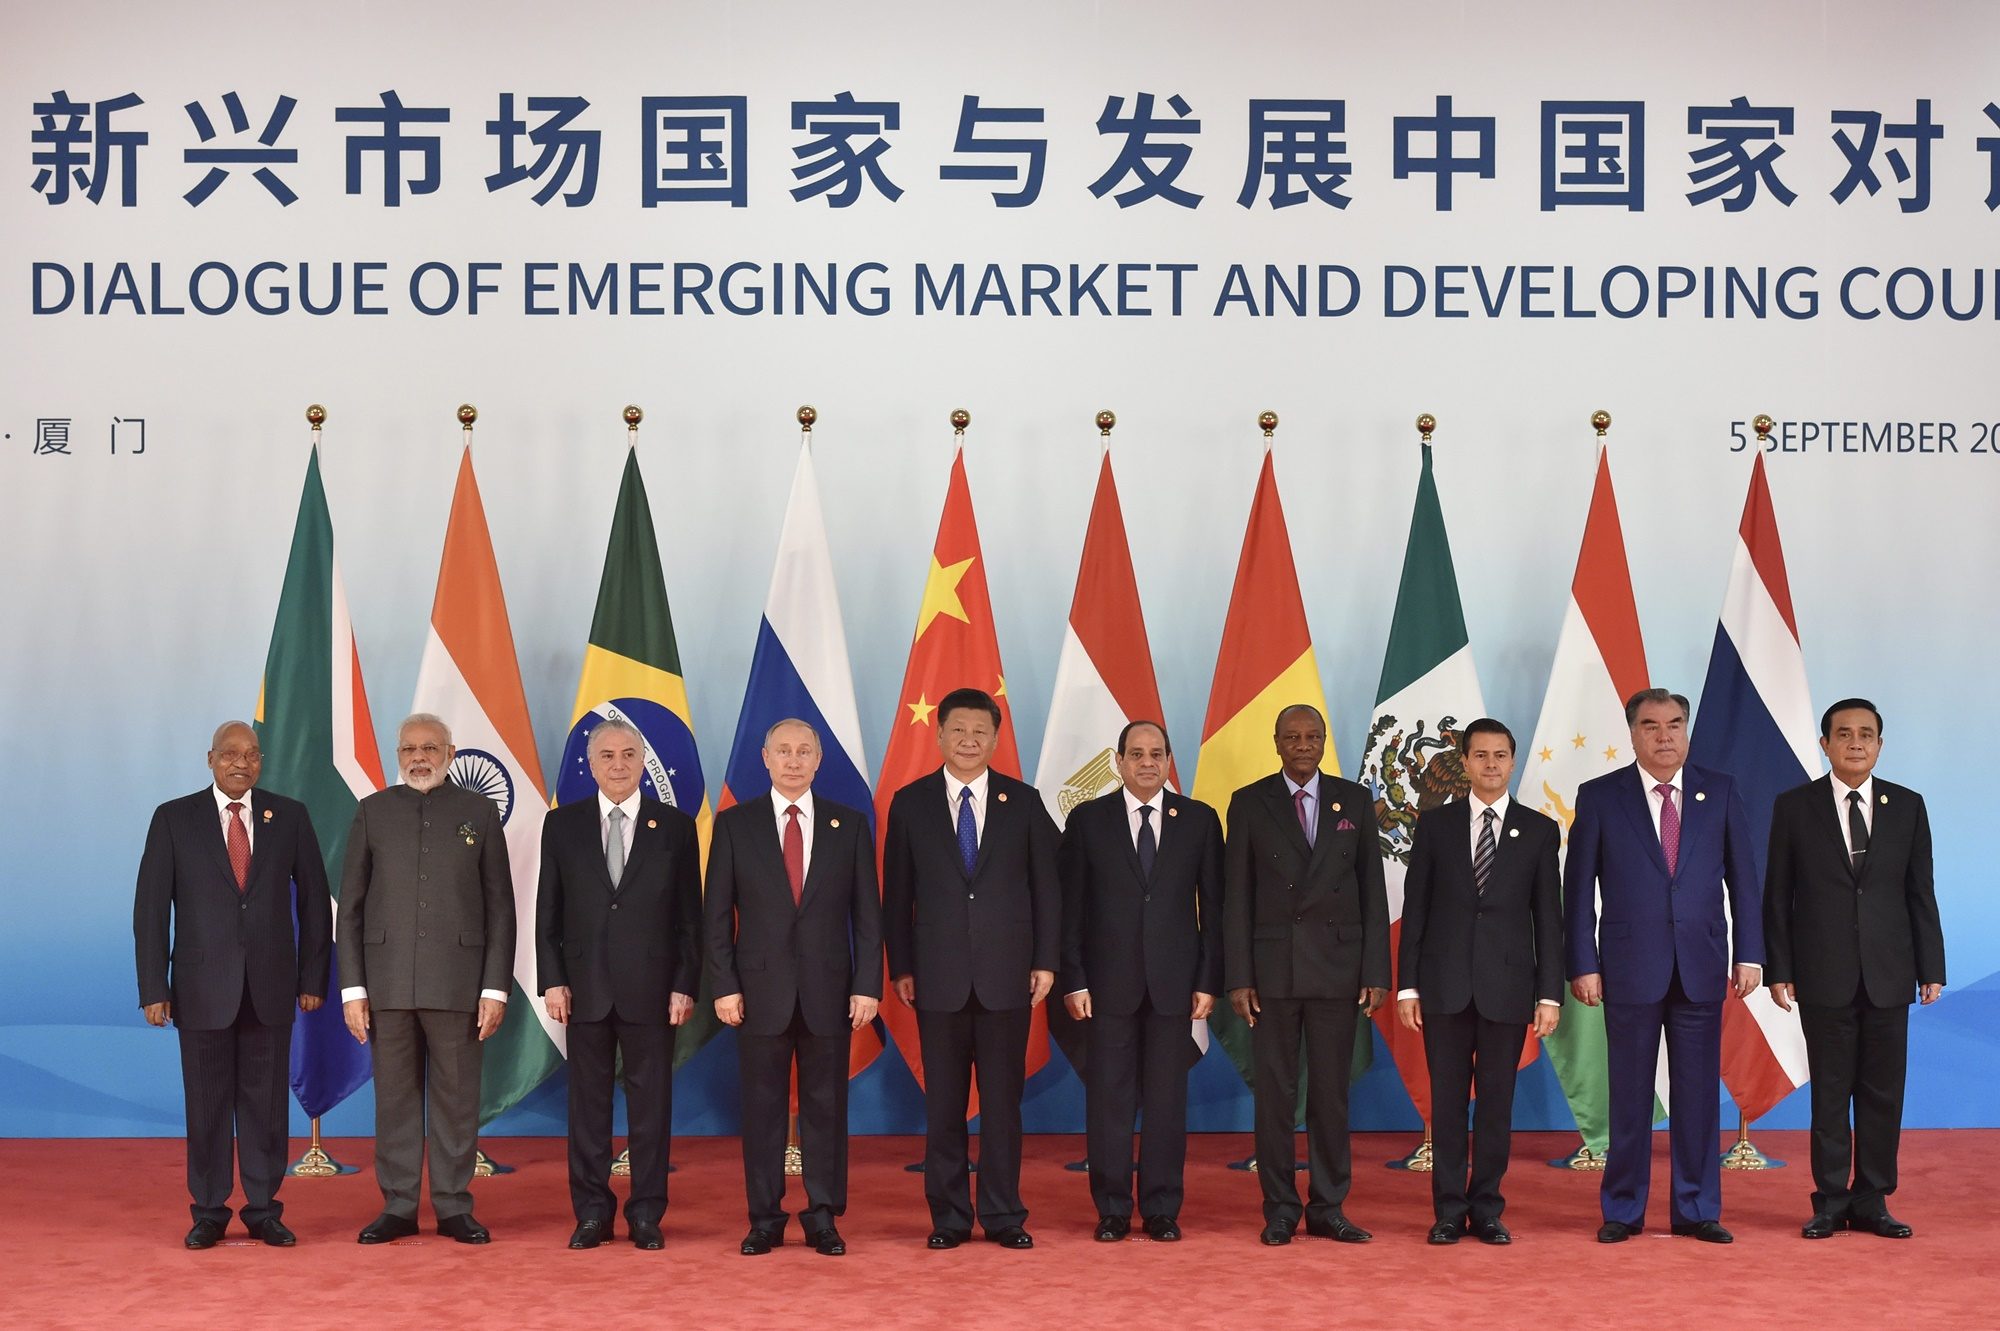 อุกฤษฏ์ ปัทมานันท์ : BRICS-บริกส์ - มติชนสุดสัปดาห์